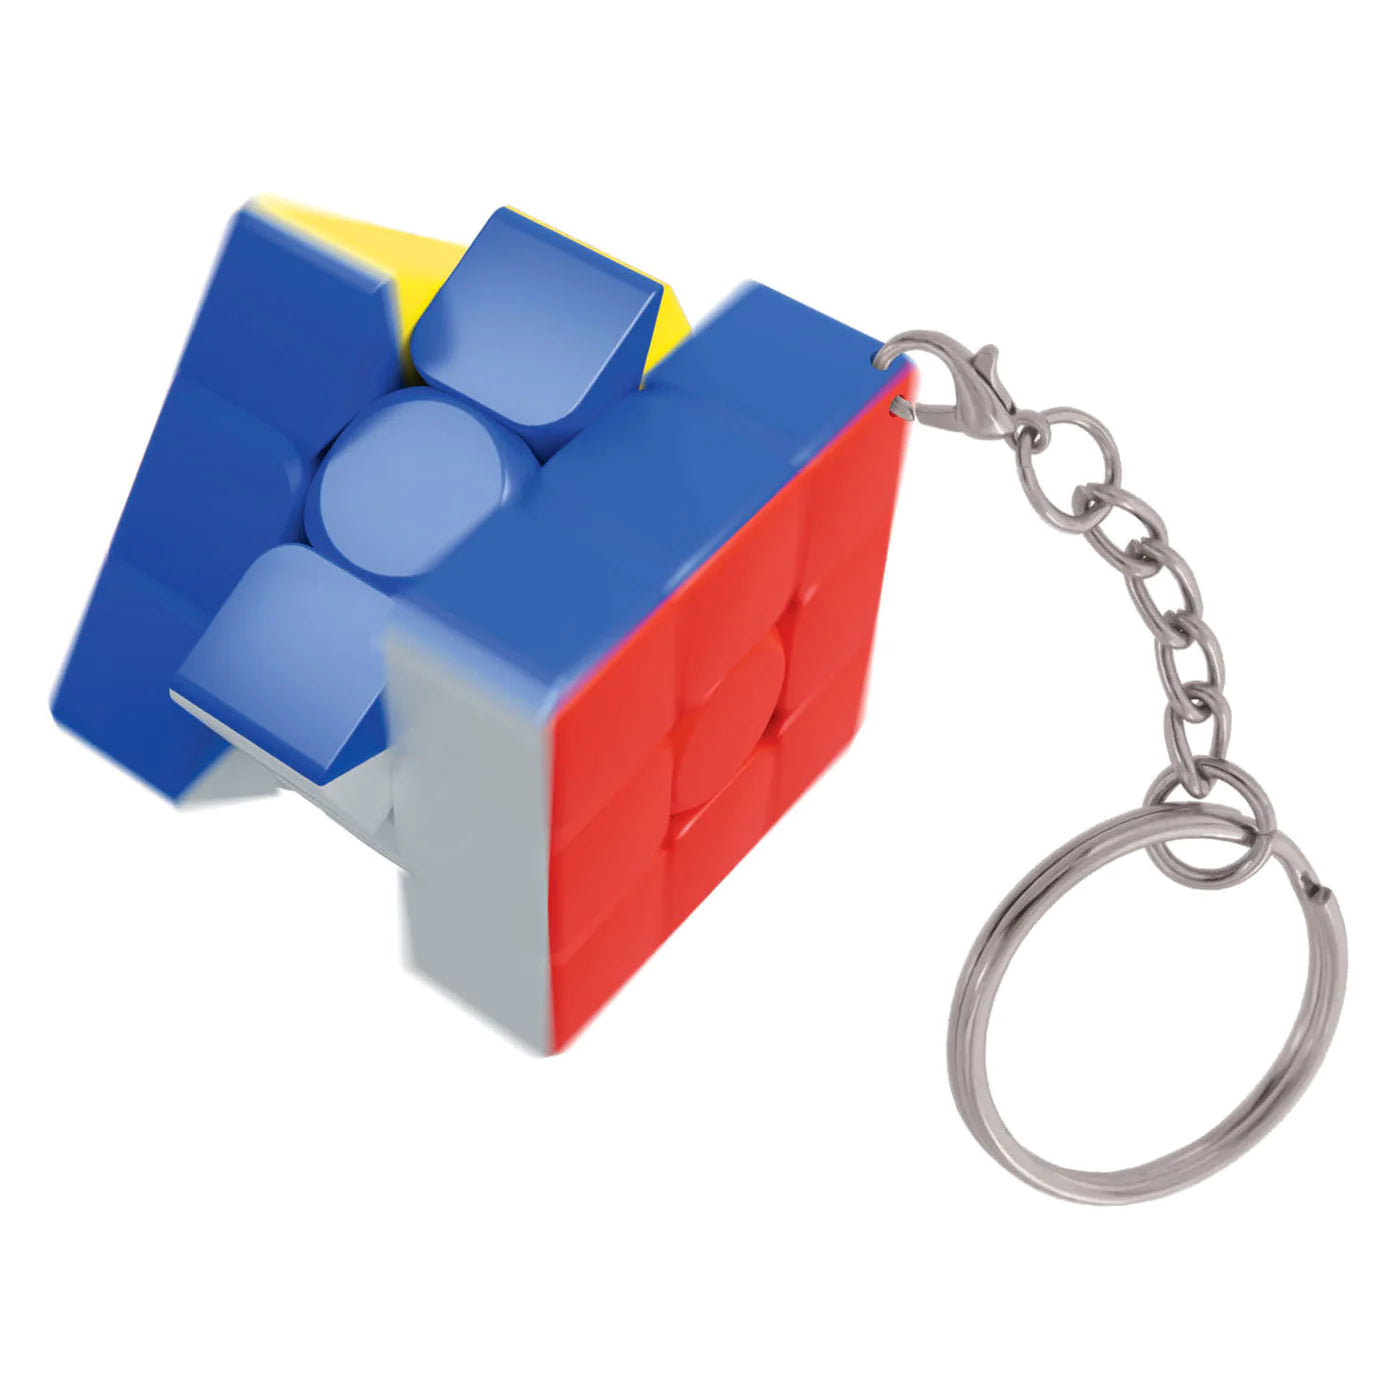 Nexcube 3x3 Keychain